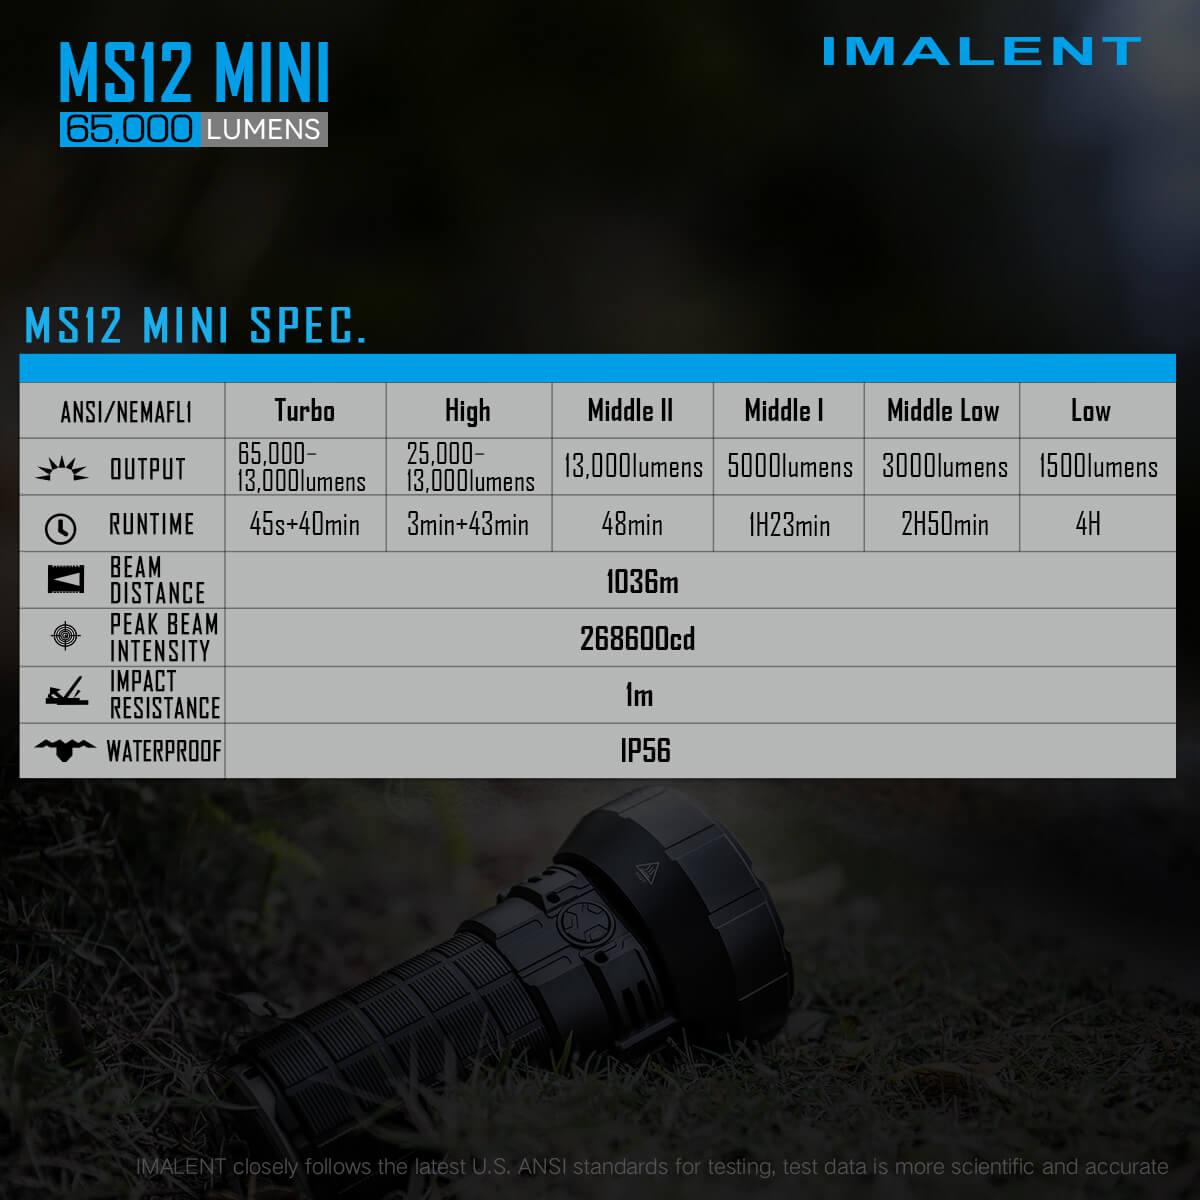 Imalent NS12 MINI